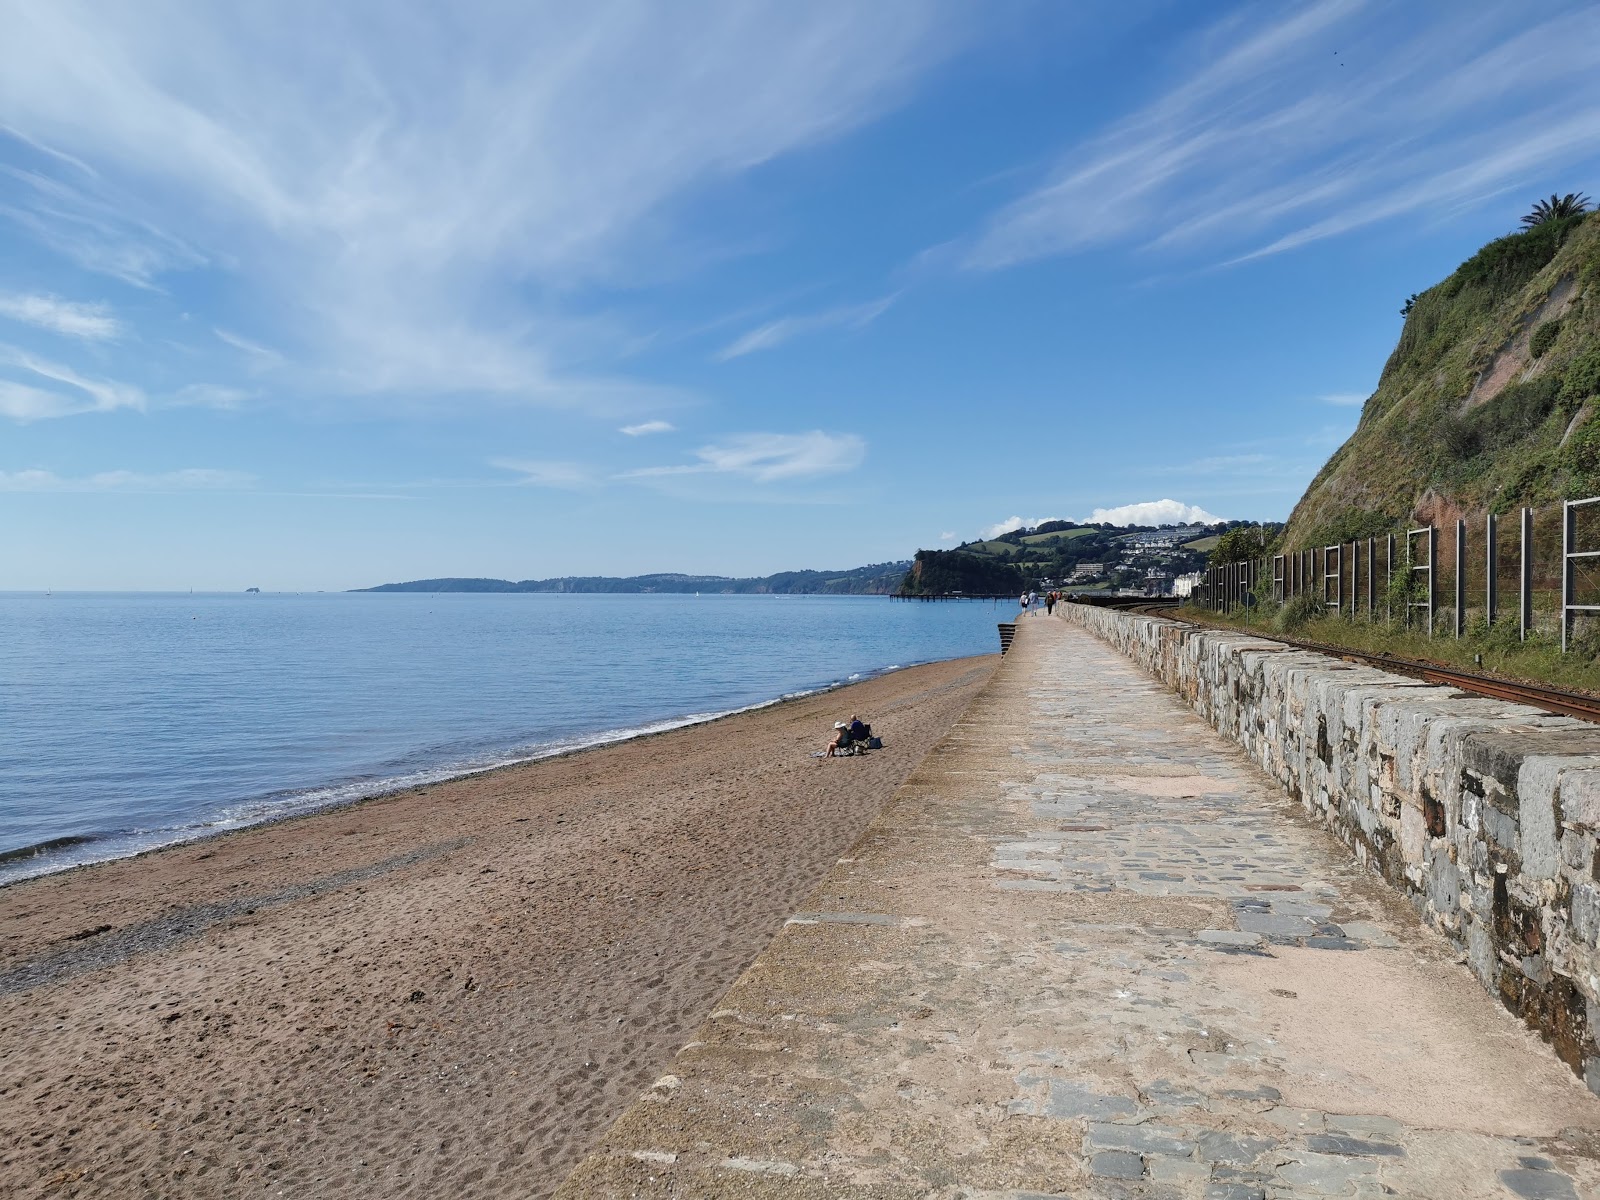 Foto af Teignmouth strand - populært sted blandt afslapningskendere